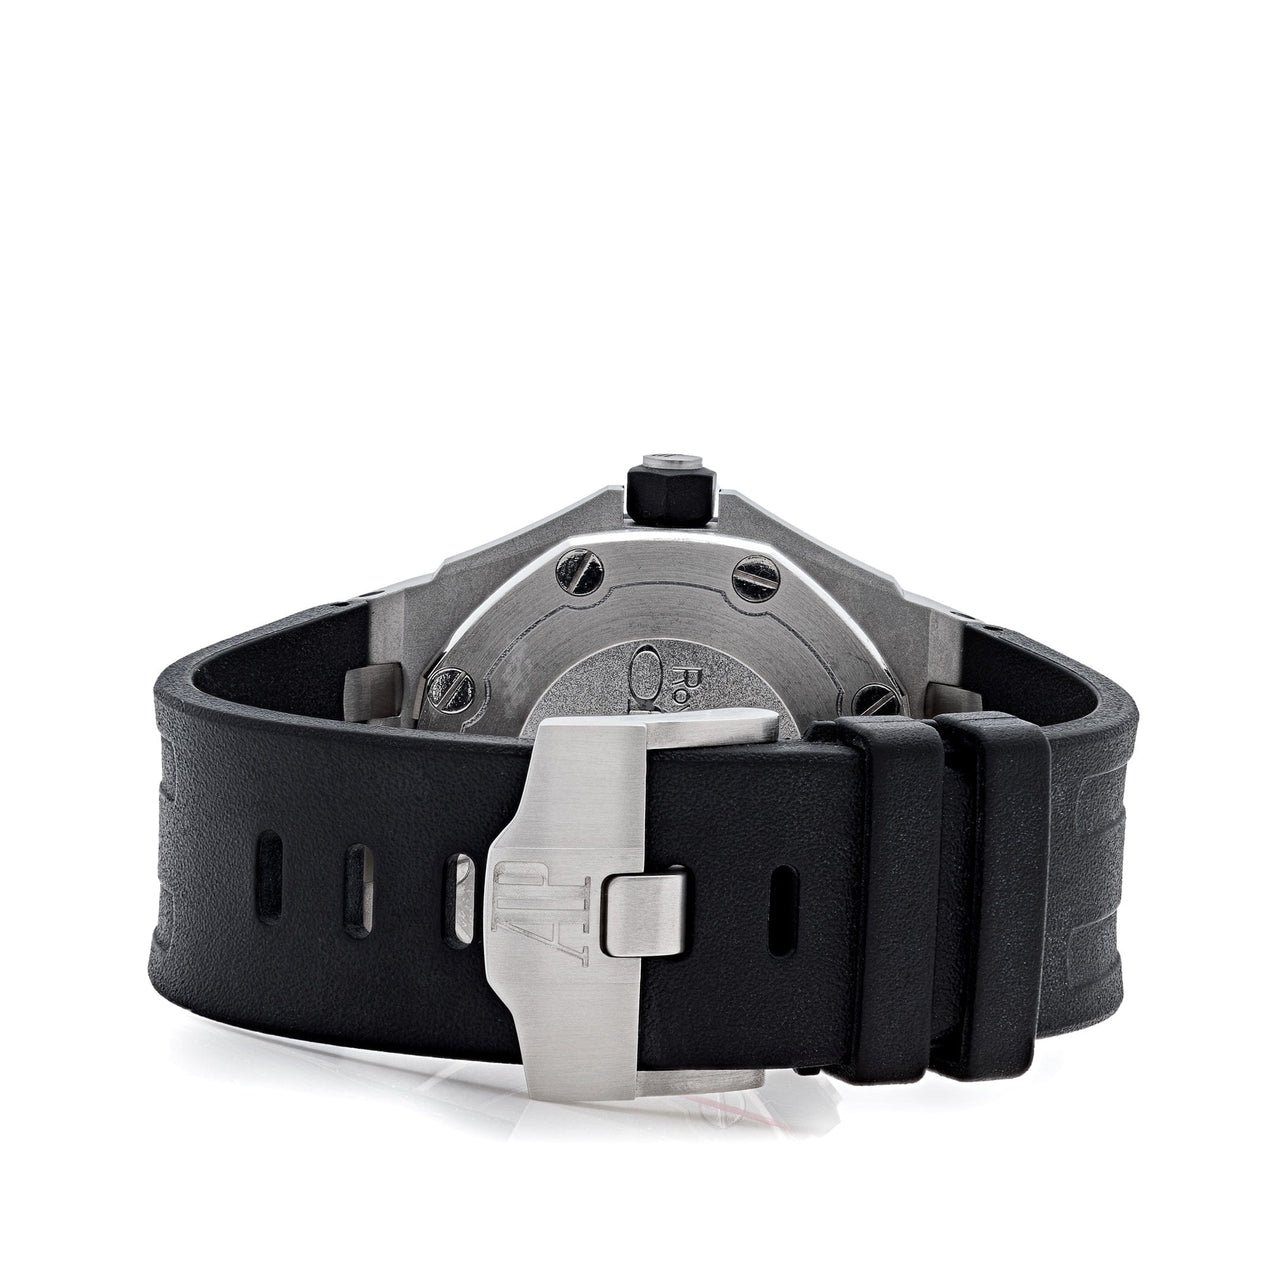 Luxury Watch Audemars Piguet Royal Oak Offshore Diver 42mm Steel Black Dial 15703ST.OO.A002CA.01 Wrist Aficionado